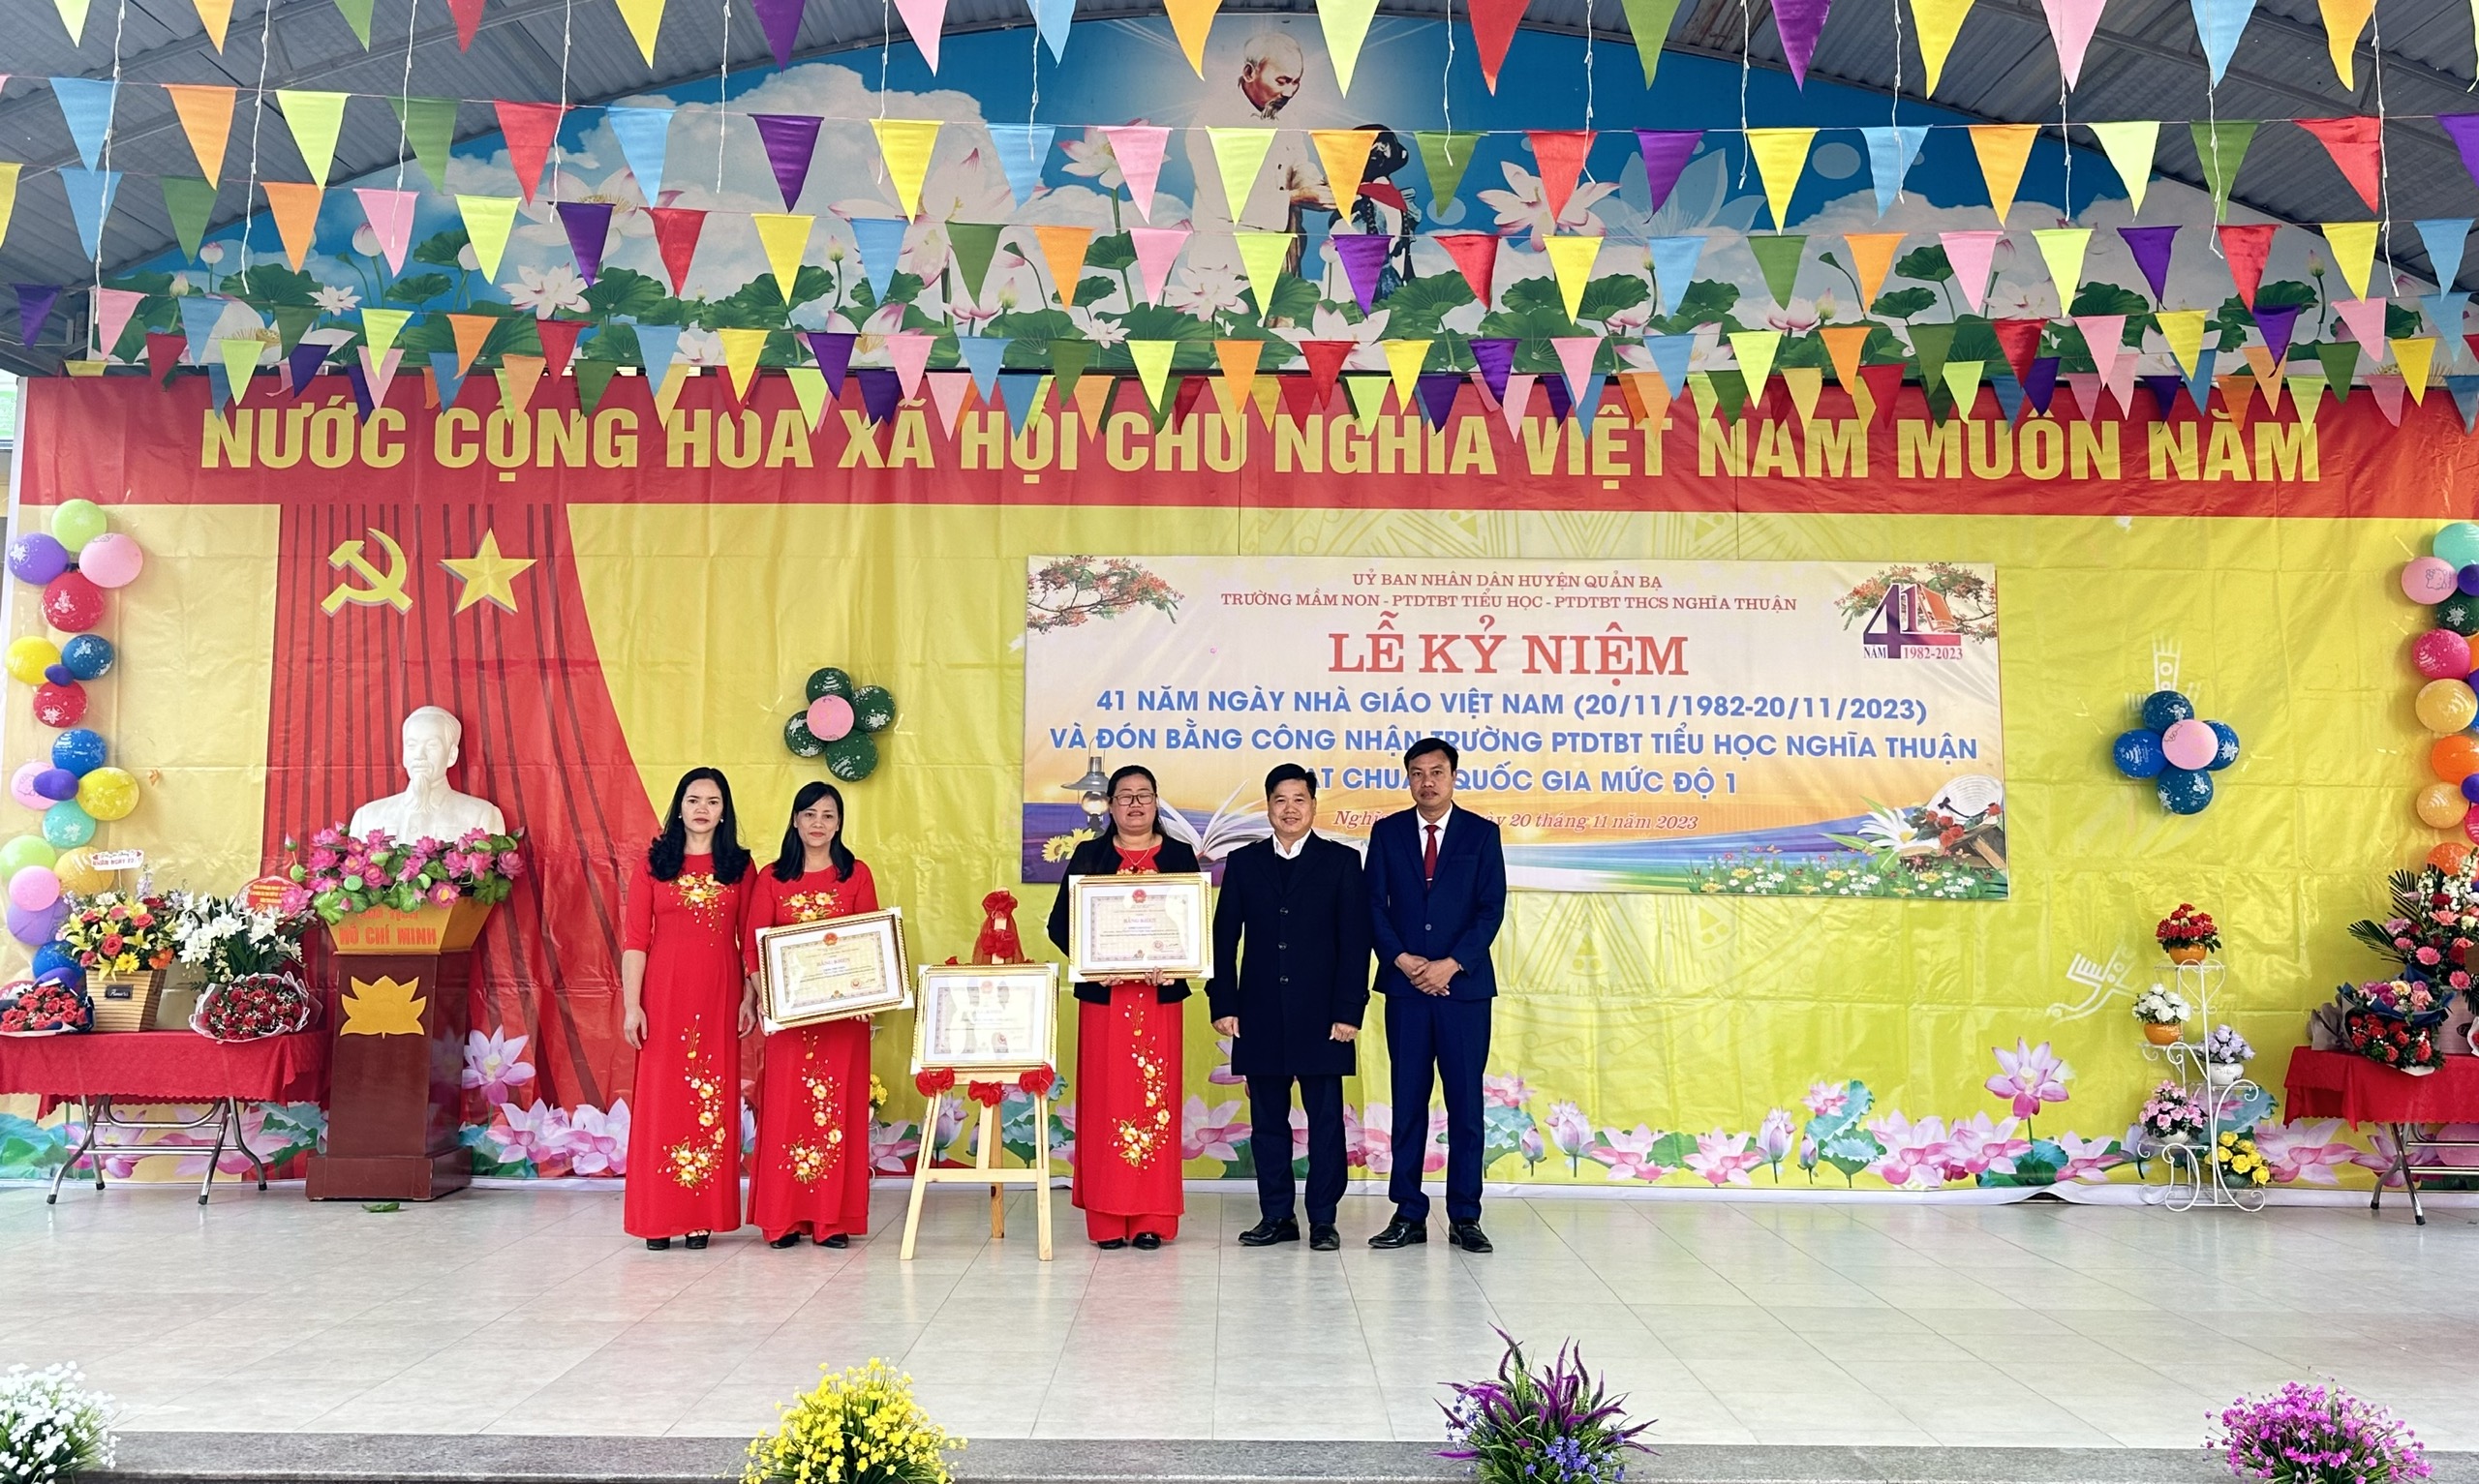 Quản Bạ: Kỷ niệm ngày Nhà giáo Việt Nam và đón bằng công nhận trường PTDTBT Tiểu học Nghĩa Thuận đạt chuẩn quốc gia mức độ 1